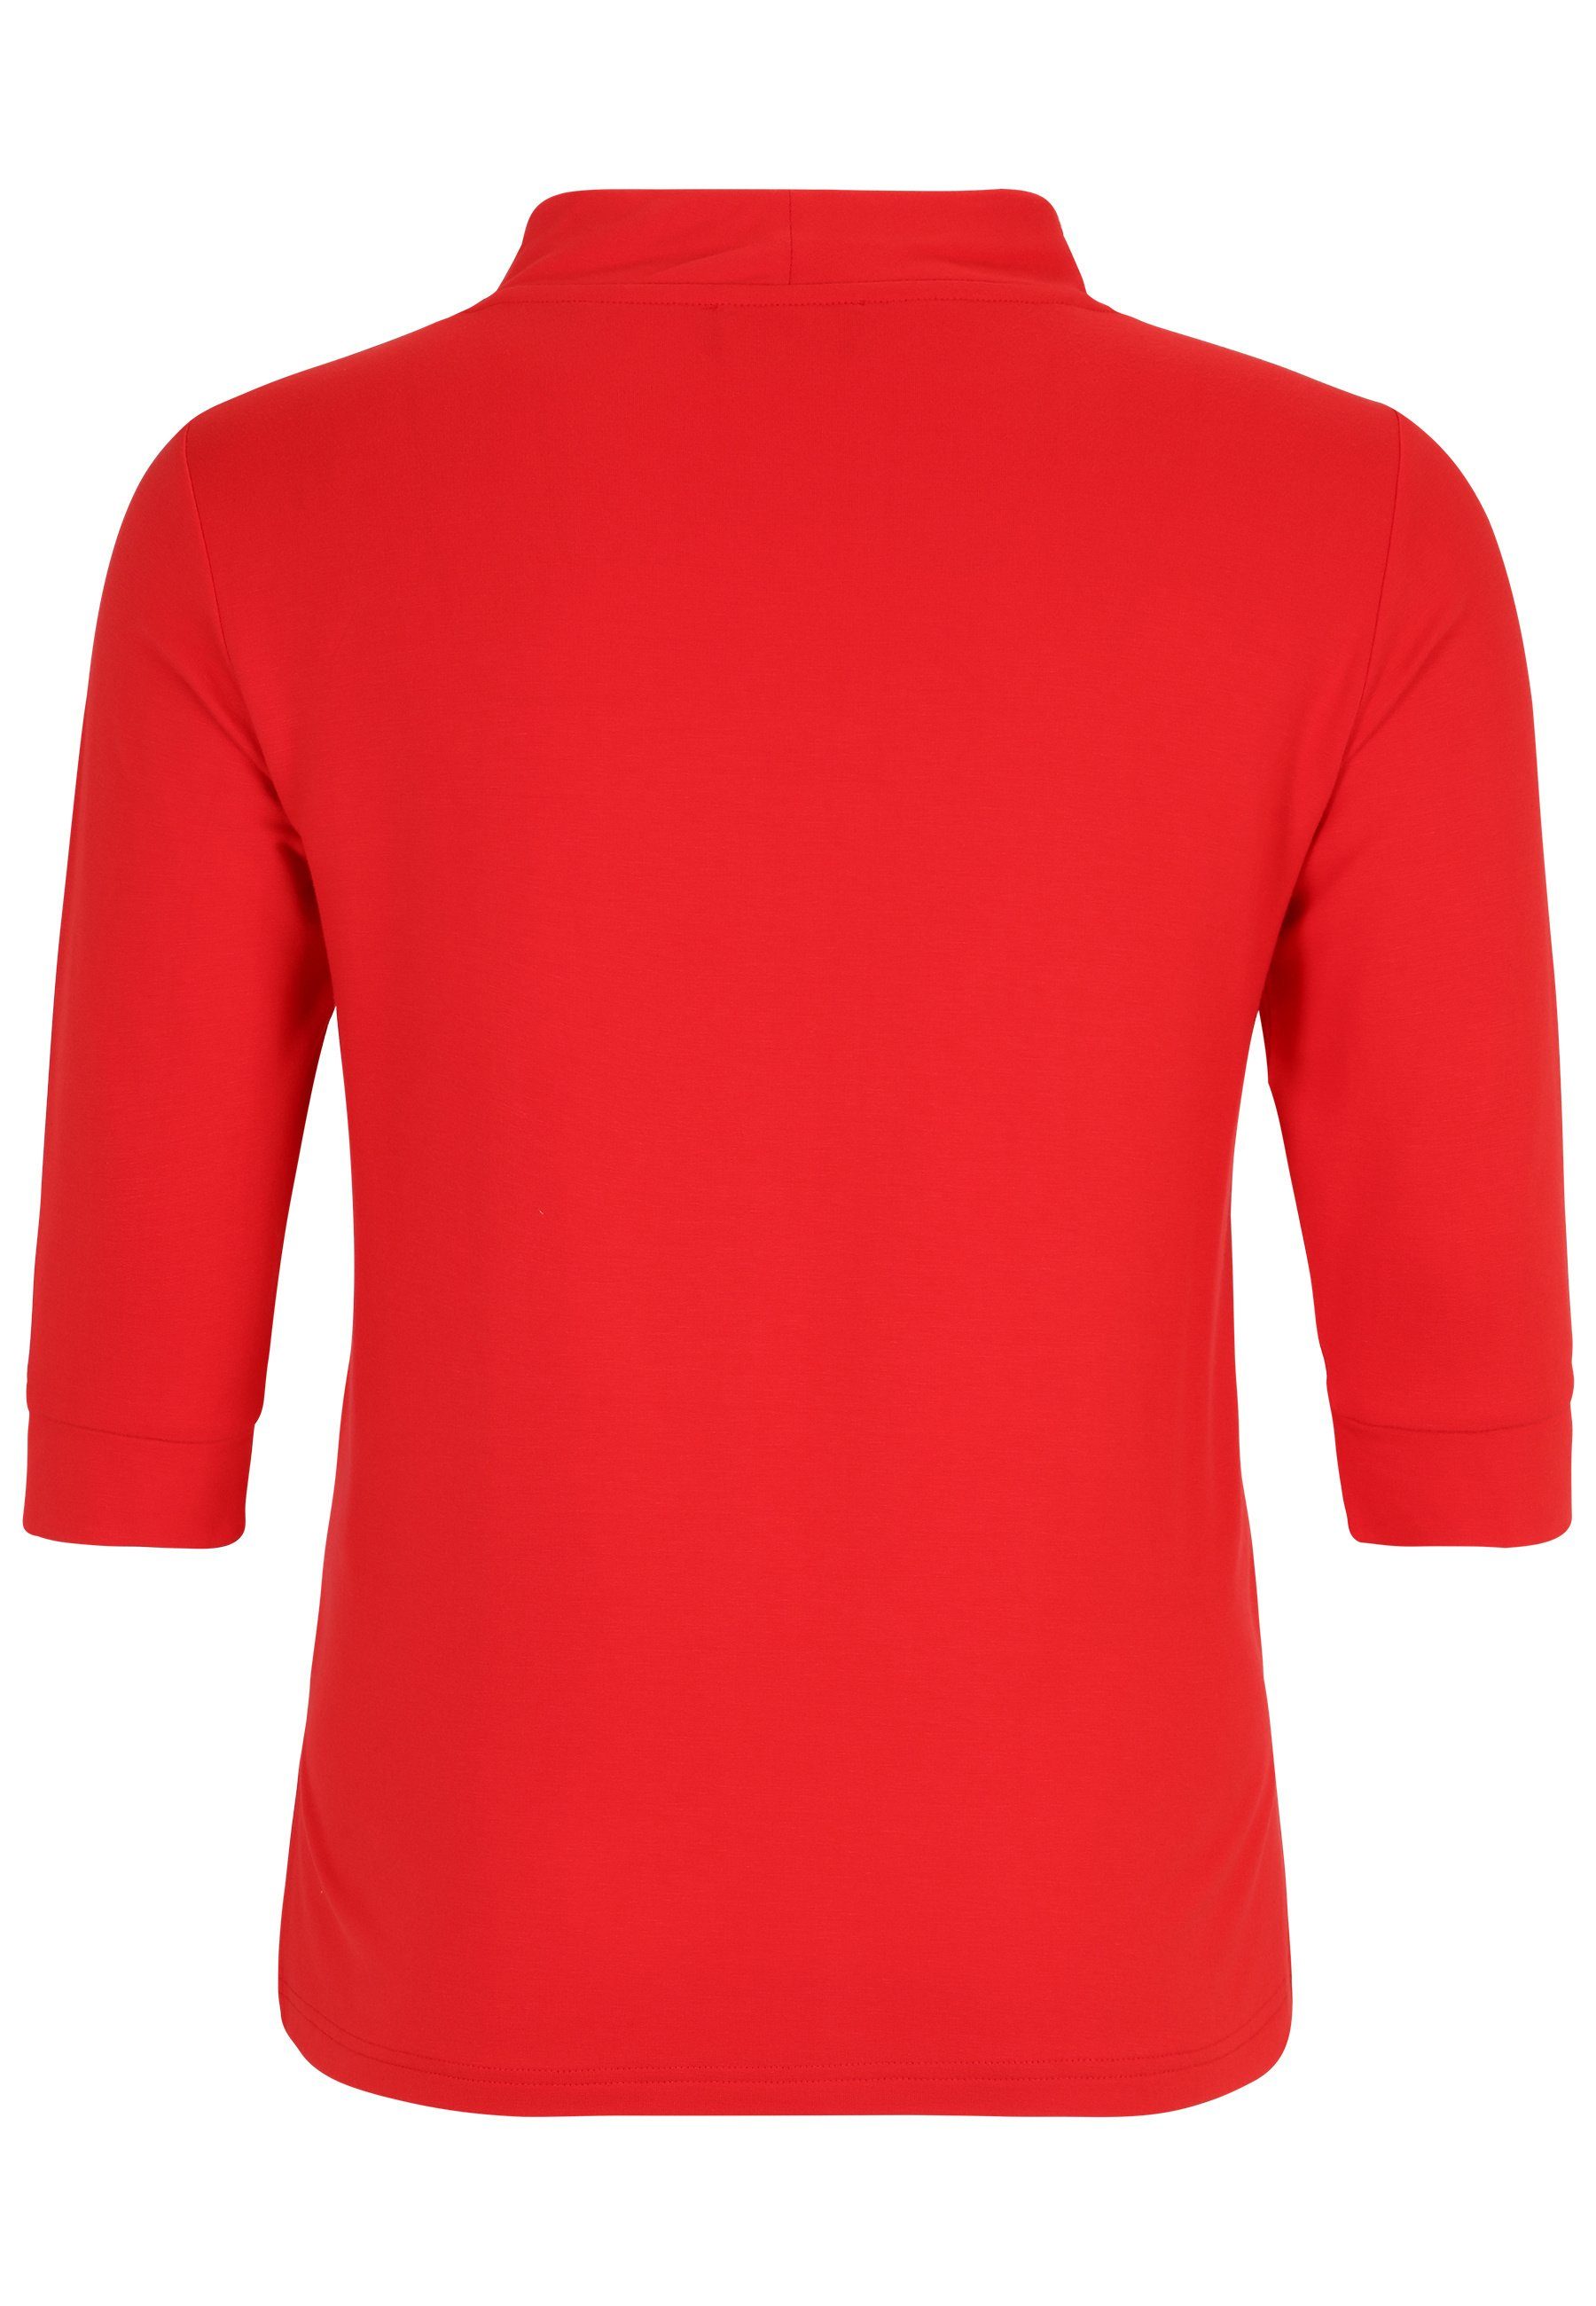 Doris Streich Print-Shirt rot Sweatshirt Glitzer-Motiv mit